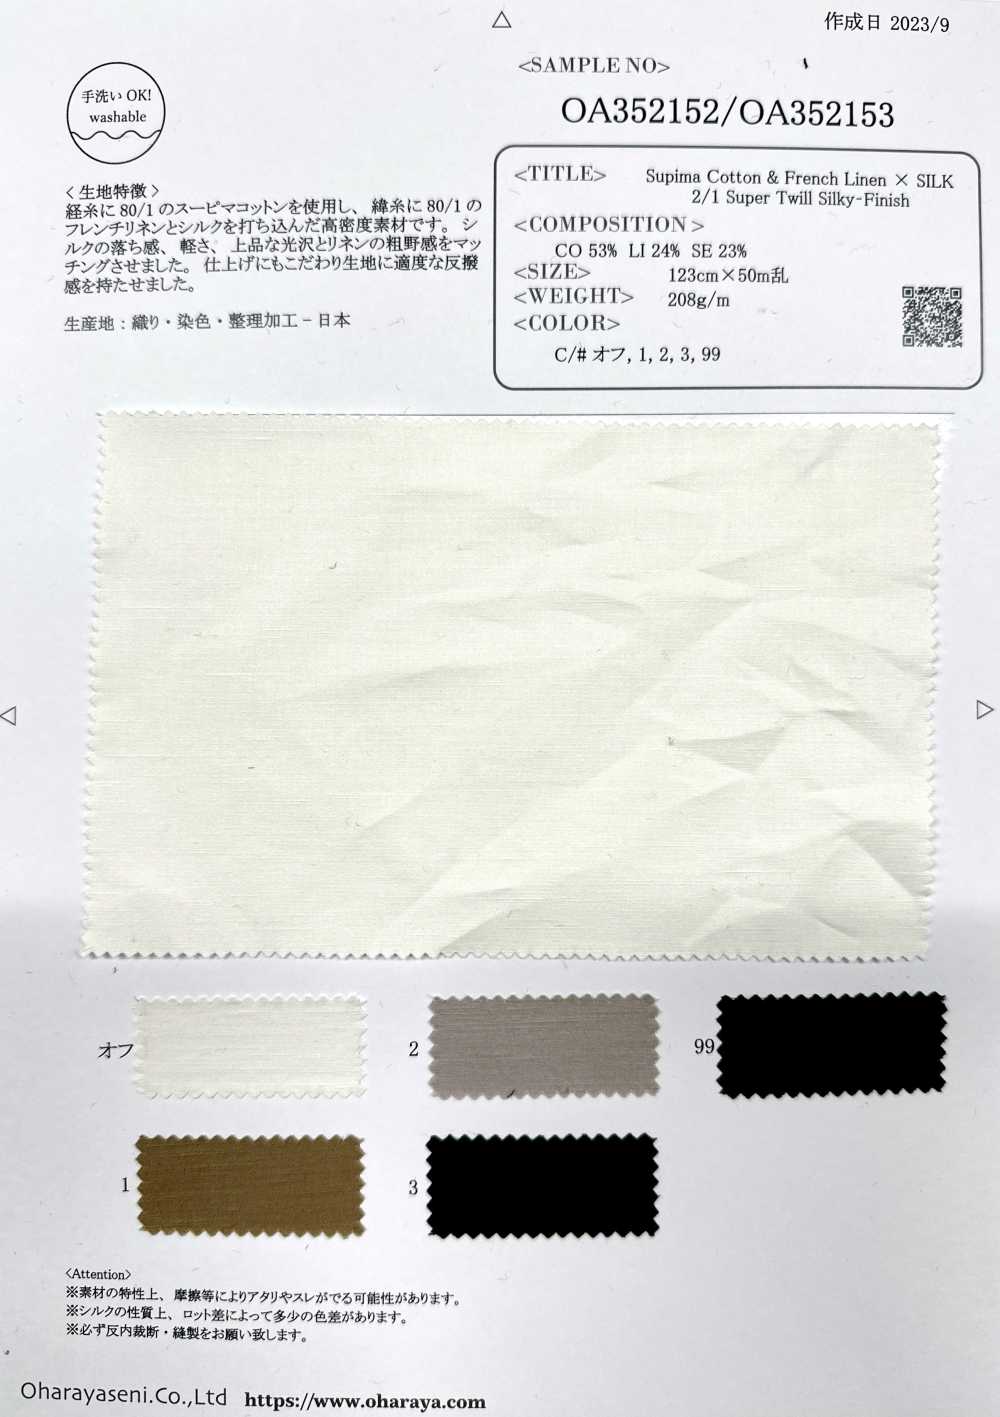 OA352152 Supima Cotton & Linen Pháp × SILK 2/1 Vải Chéo Siêu Mềm Mượt Oharayaseni